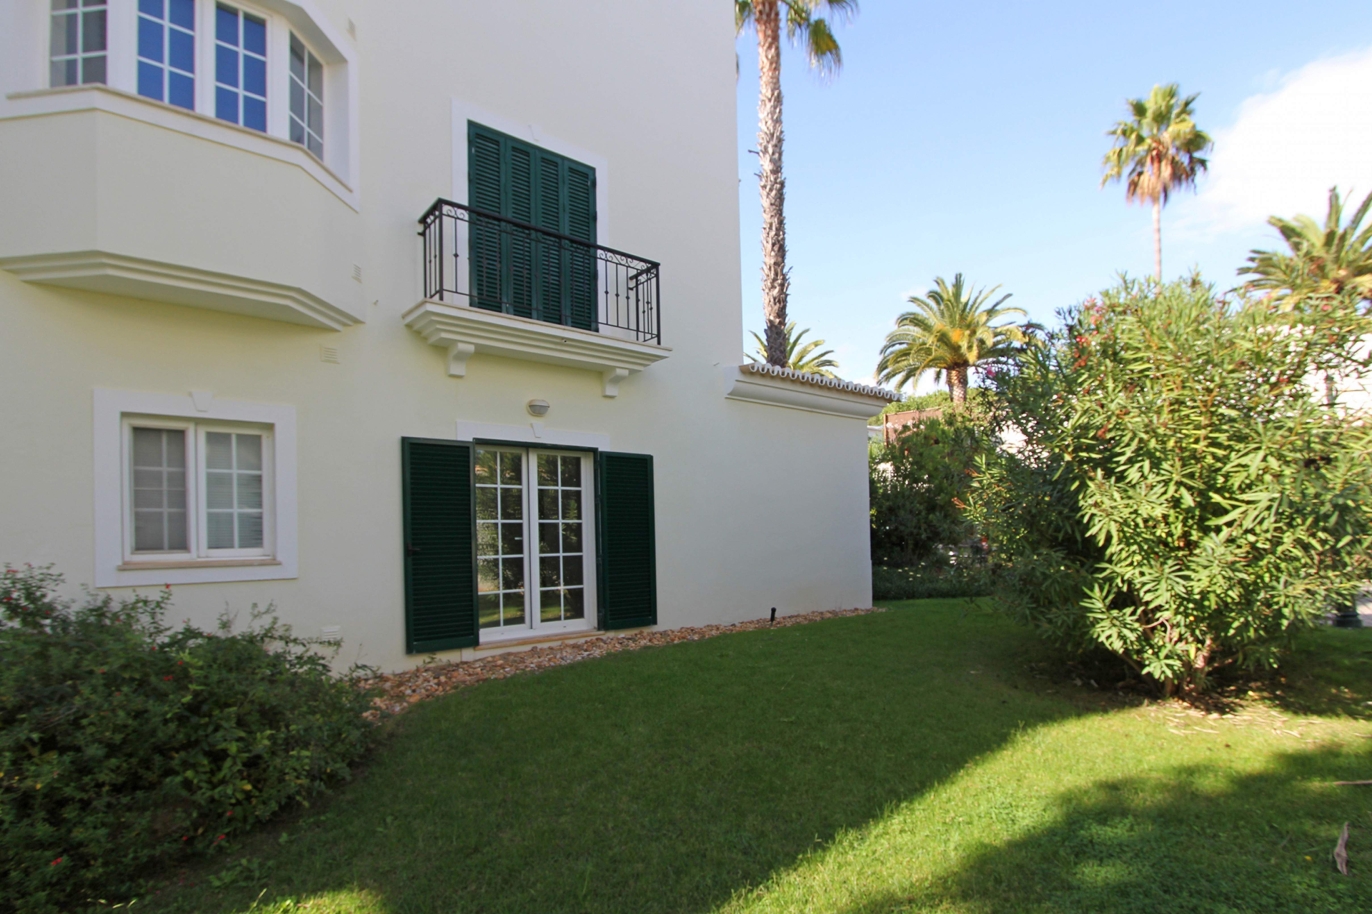 Appartement zu verkaufen, Strandnähe, Vale do Lobo, Algarve, Portugal_120386